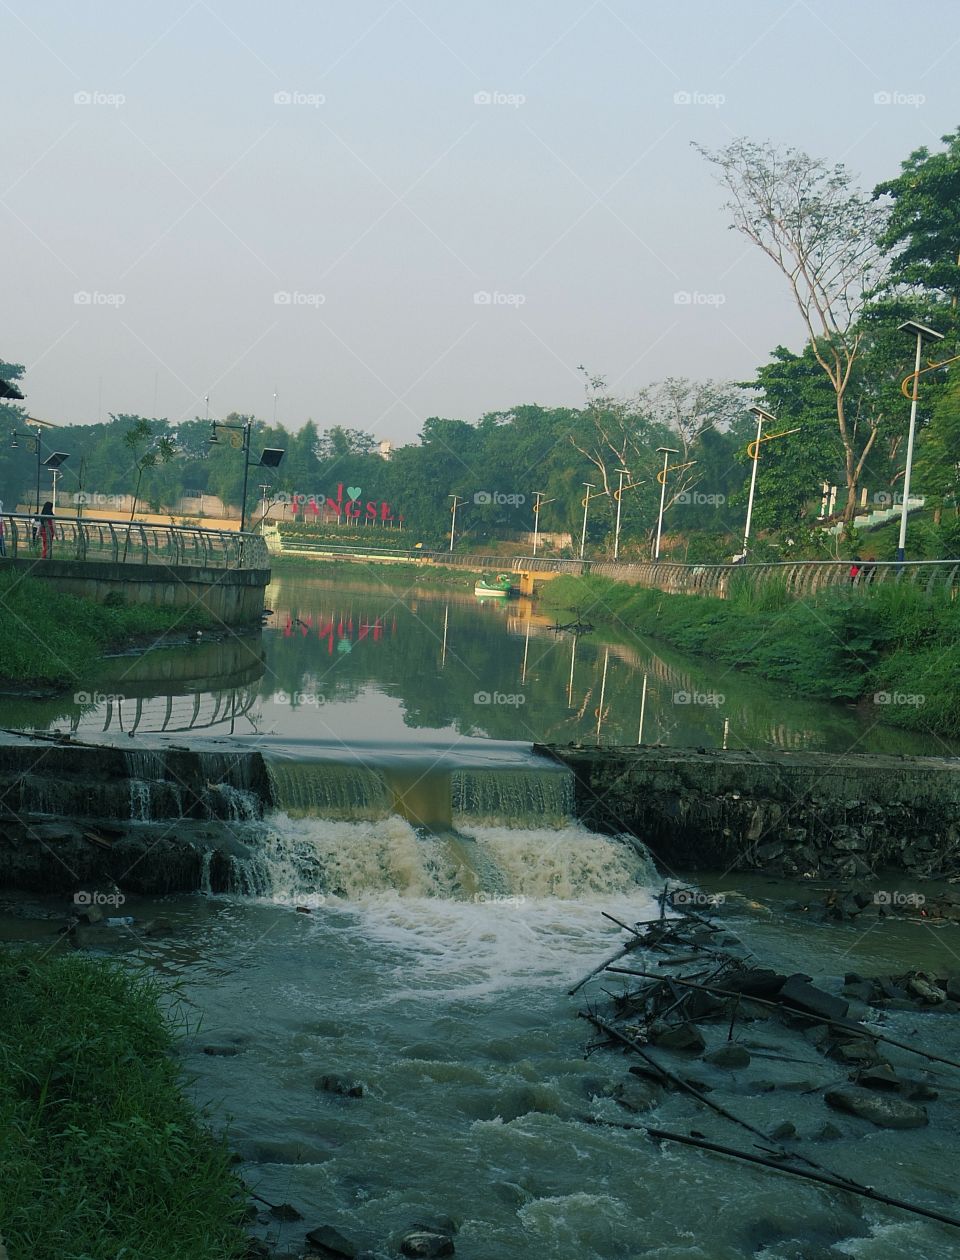 River across city park